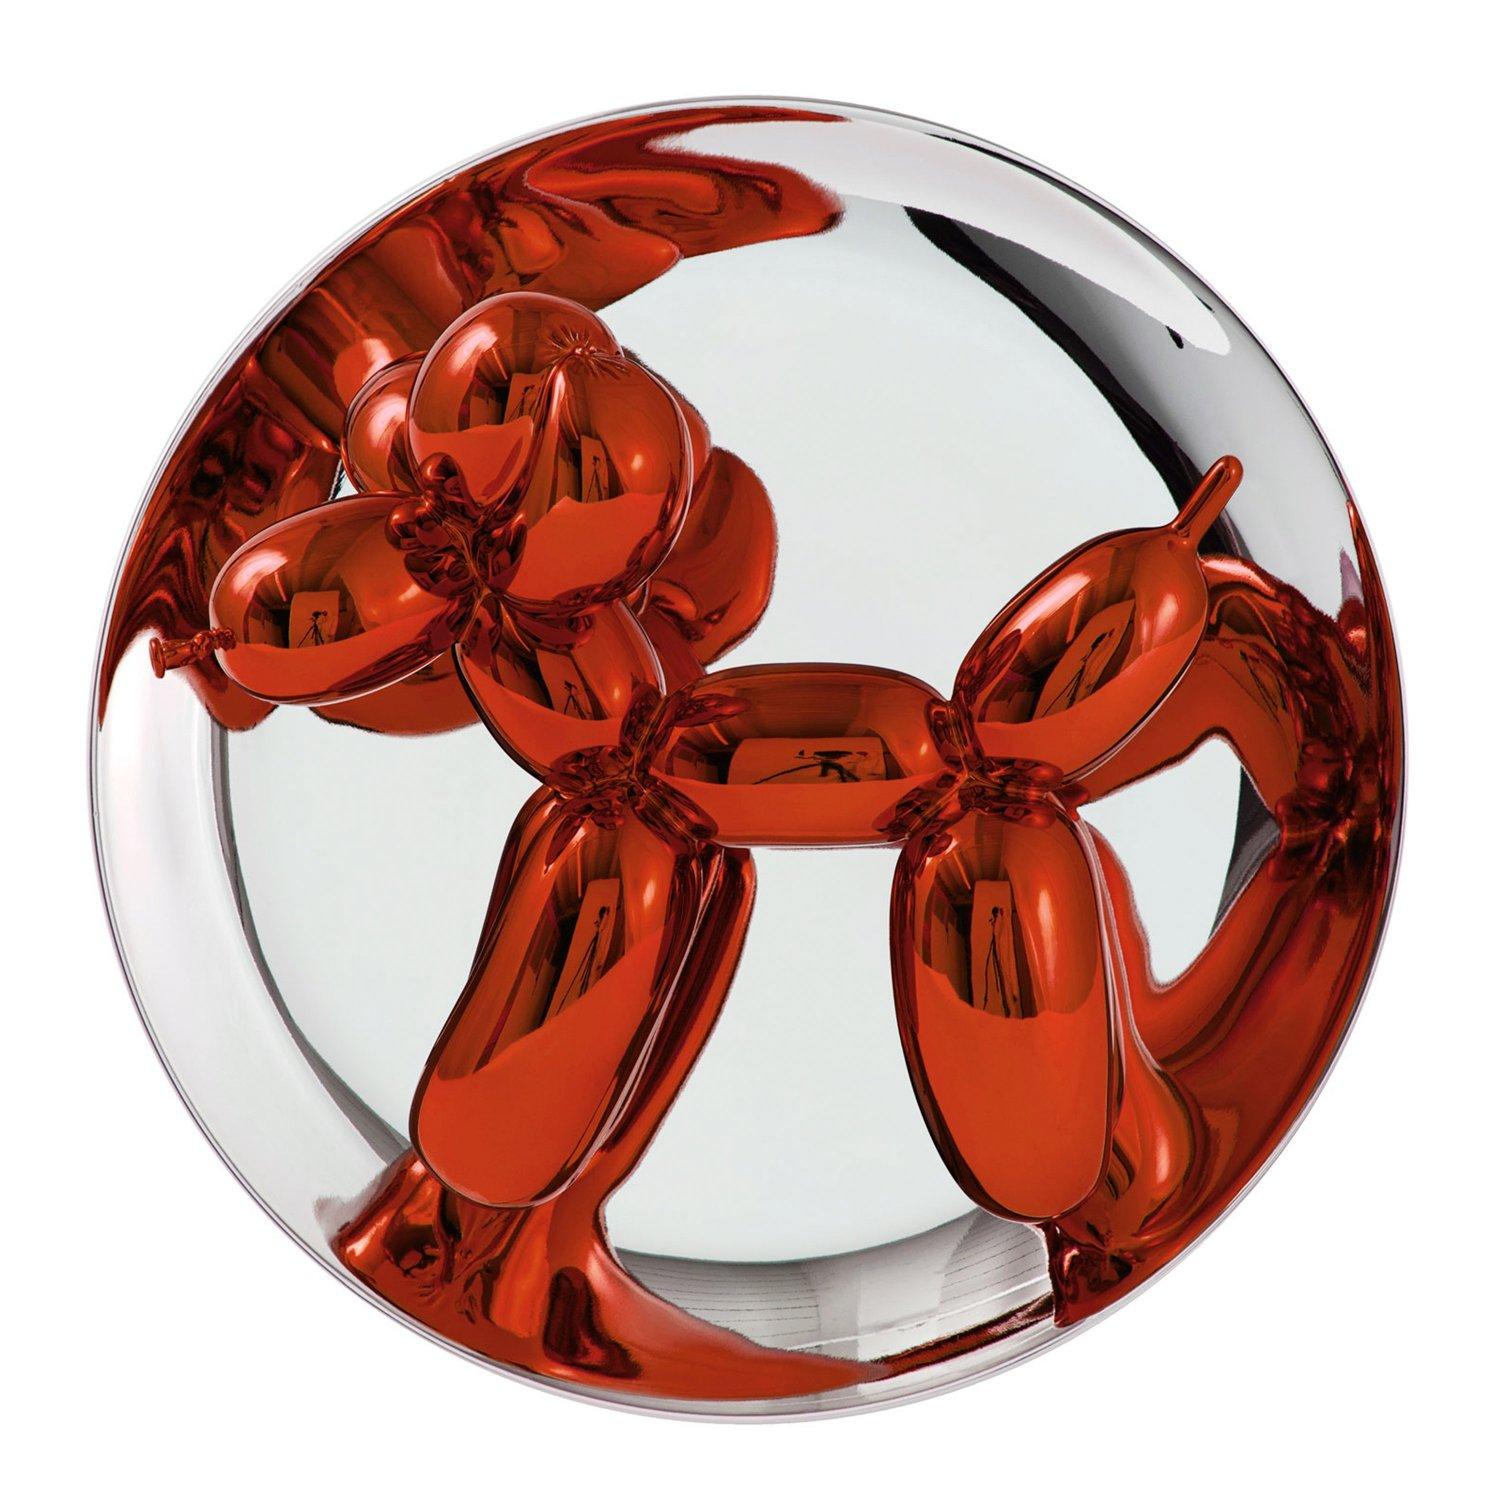 Balloon Dog (Orange) - Jeff Koons, Zeitgenössisch, 21. Jahrhundert, Skulptur, Dekor, Limitierte Auflage

Limoges-Porzellan mit chromatischer, metallisierter Beschichtung
Auflage von 2300 Stück
Signiert und nummeriert
In neuwertigem Zustand, wie vom